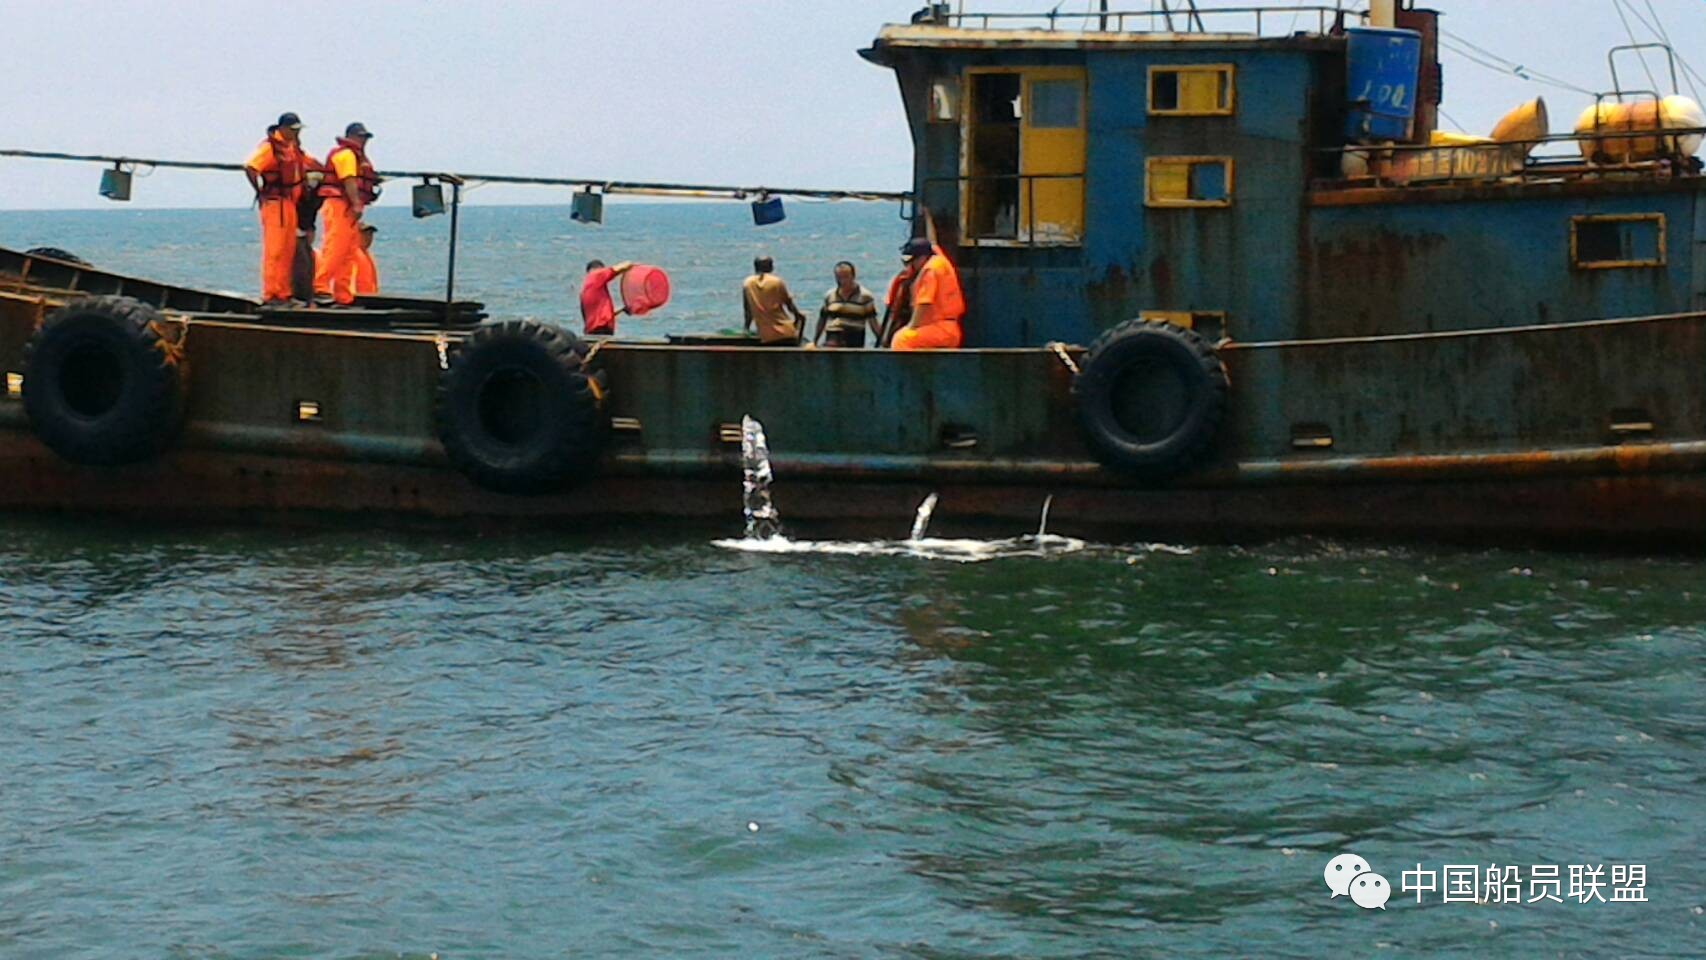 台湾籍渔船印度洋失火25船员遇险,江苏渔船成